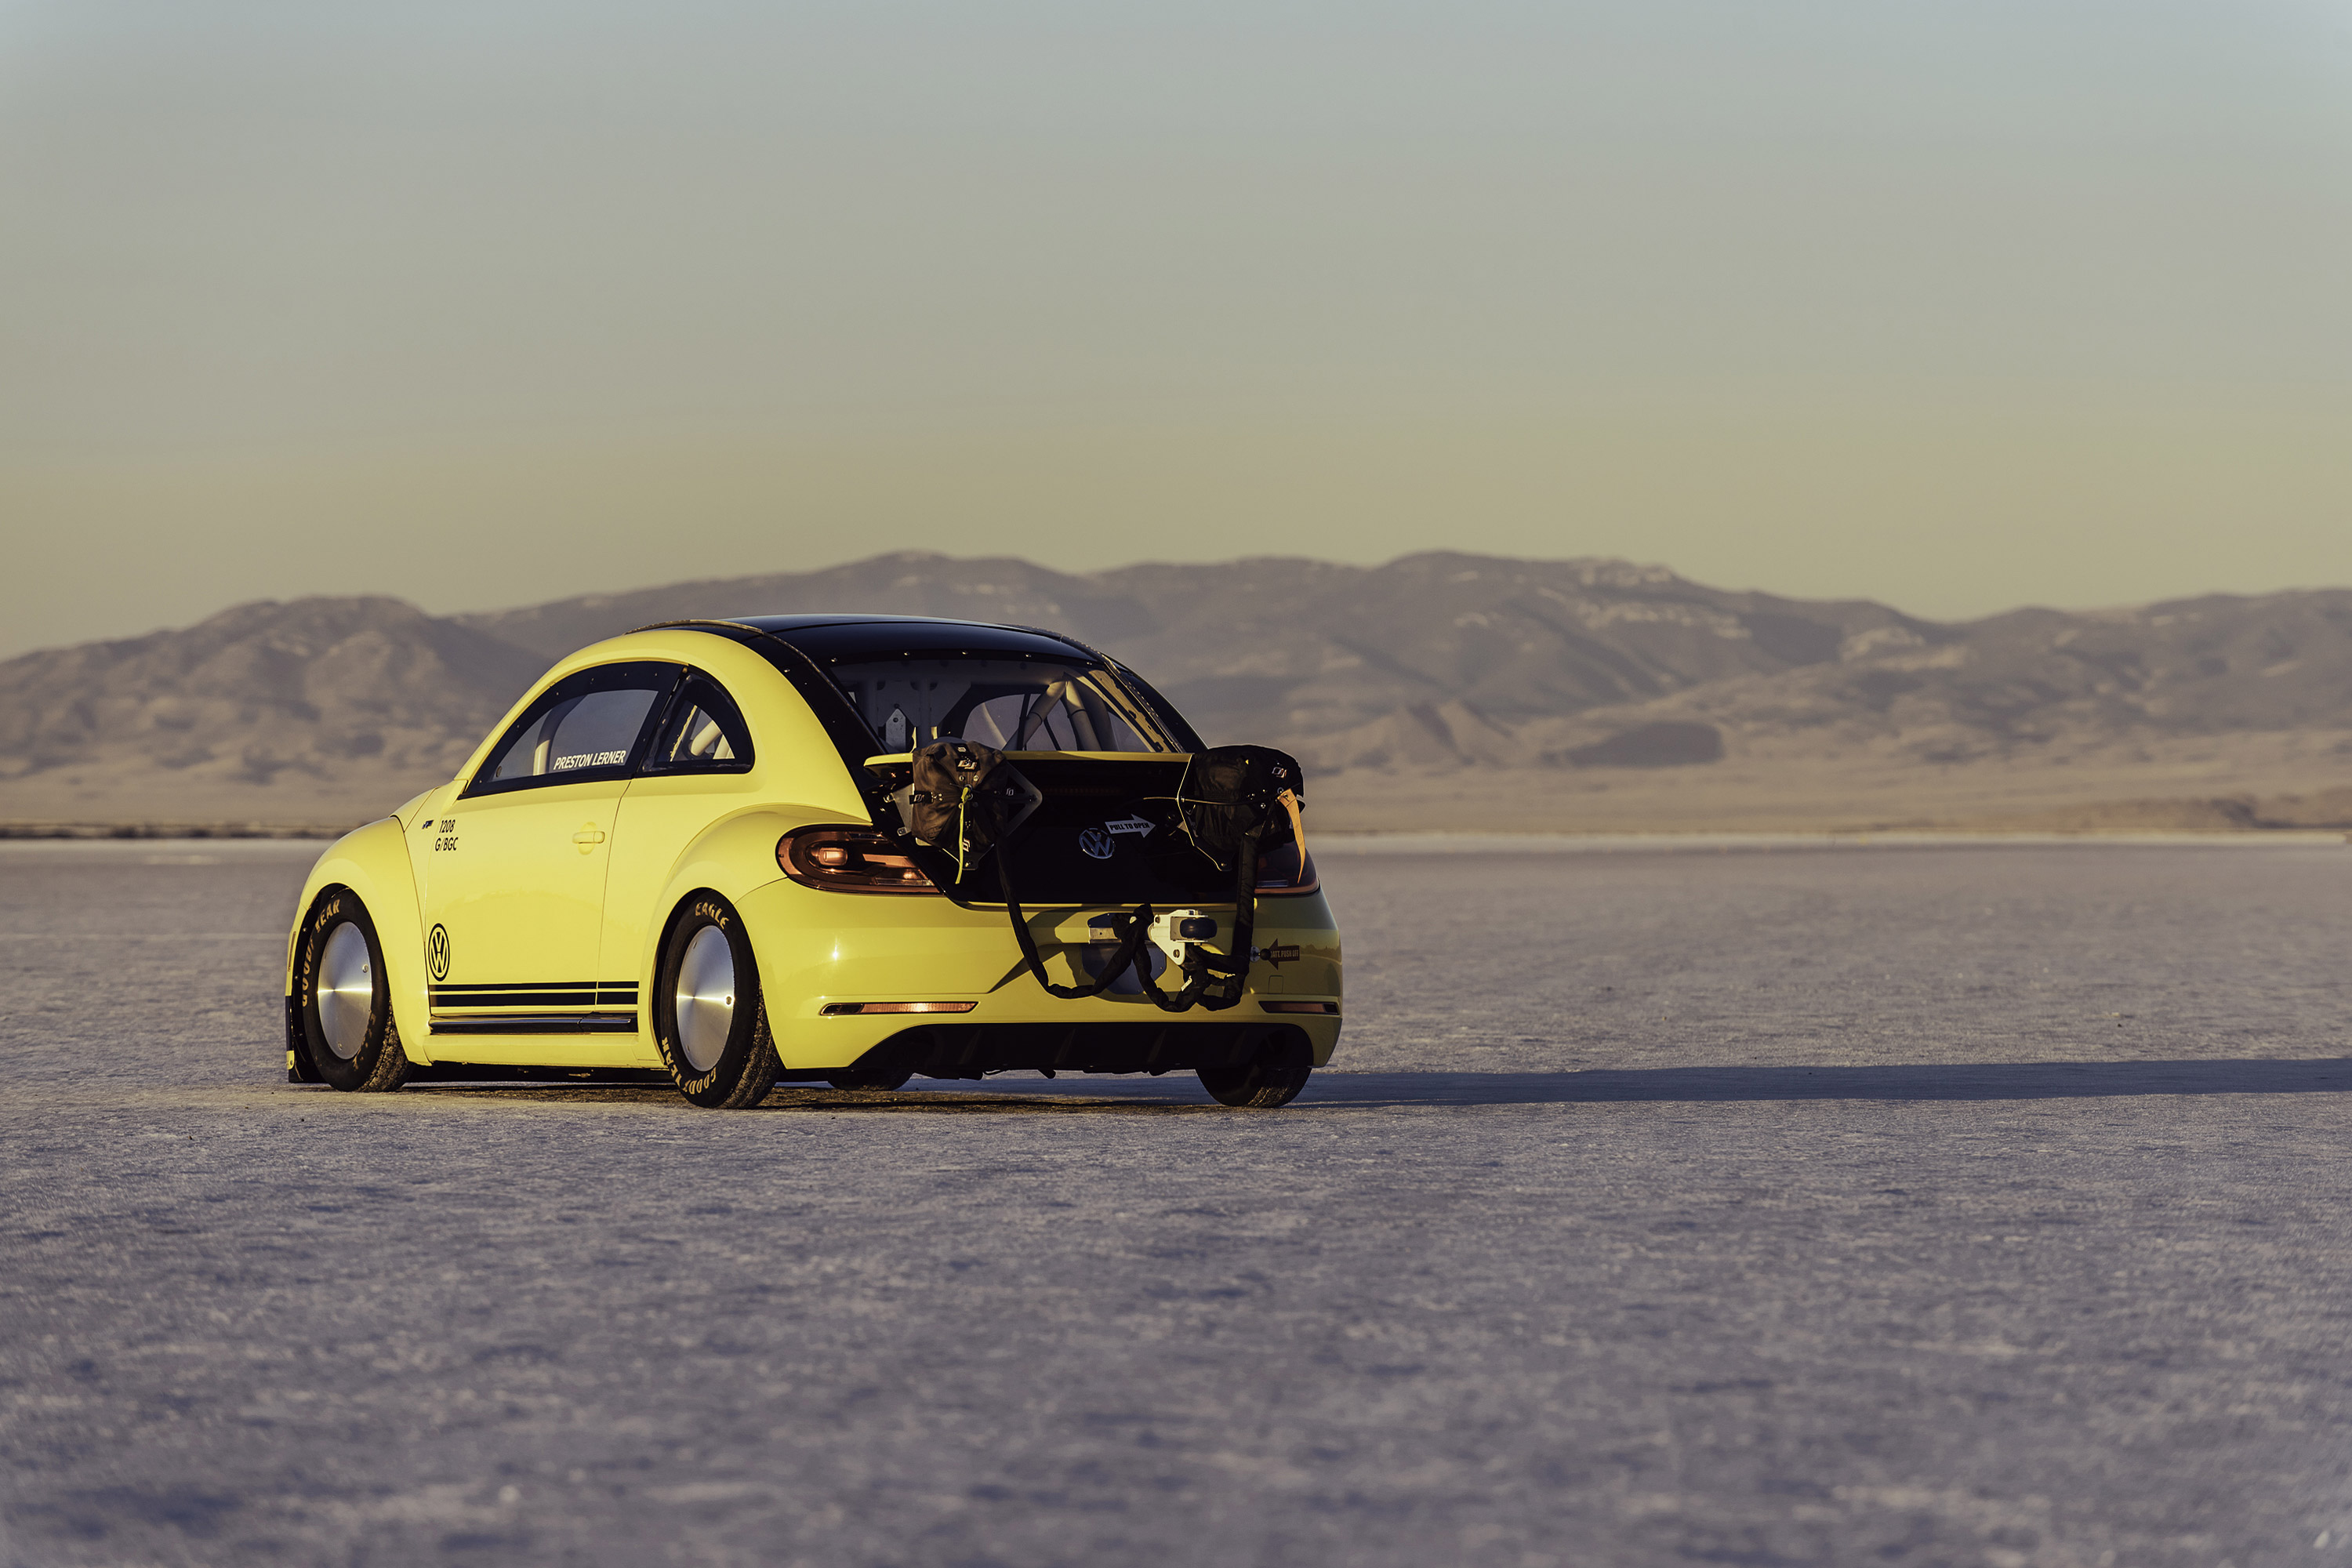  2016 Volkswagen Beetle LSR Wallpaper.